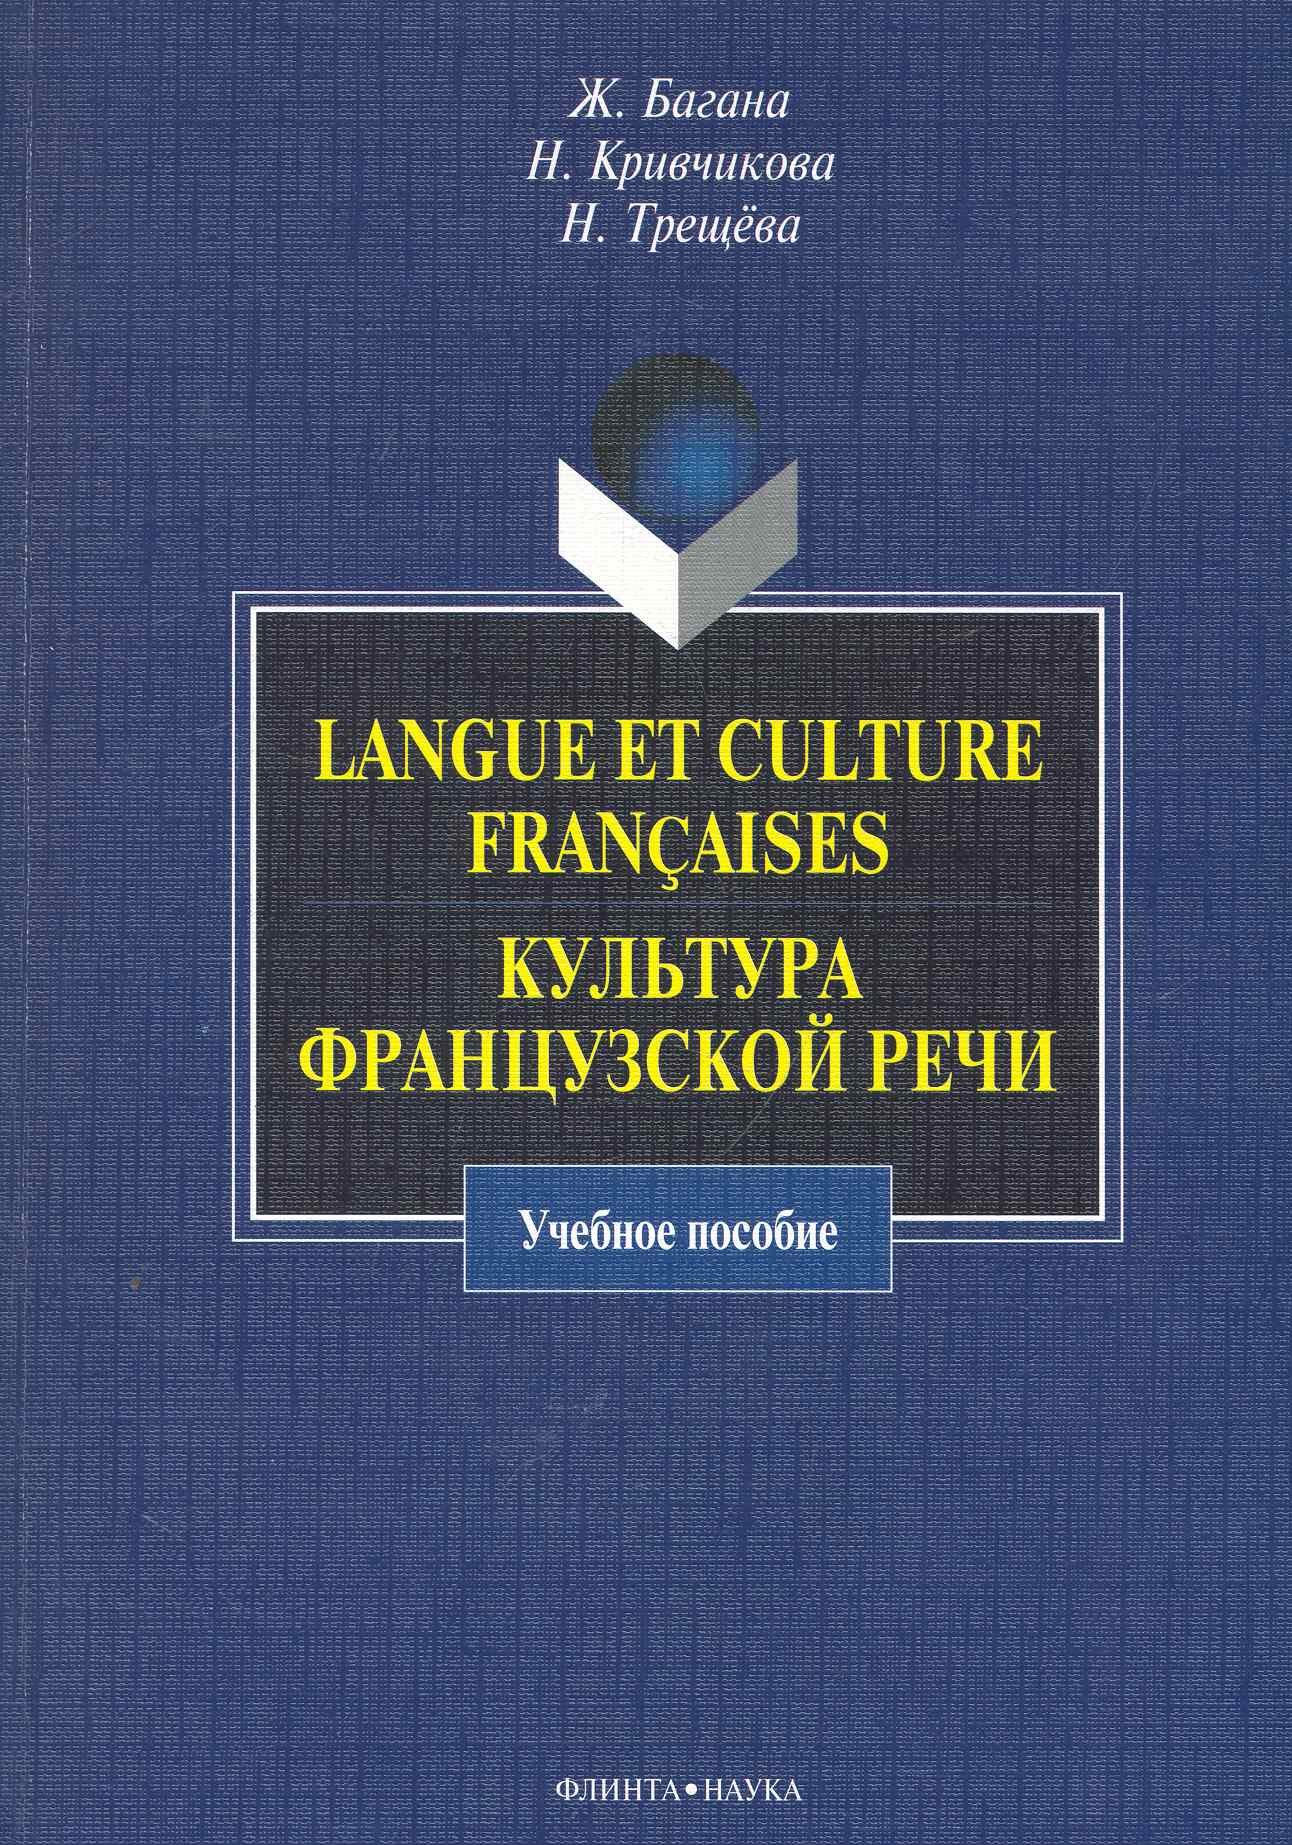 Langue et culture francaises.   : .  / ().  .,  ., ., ()